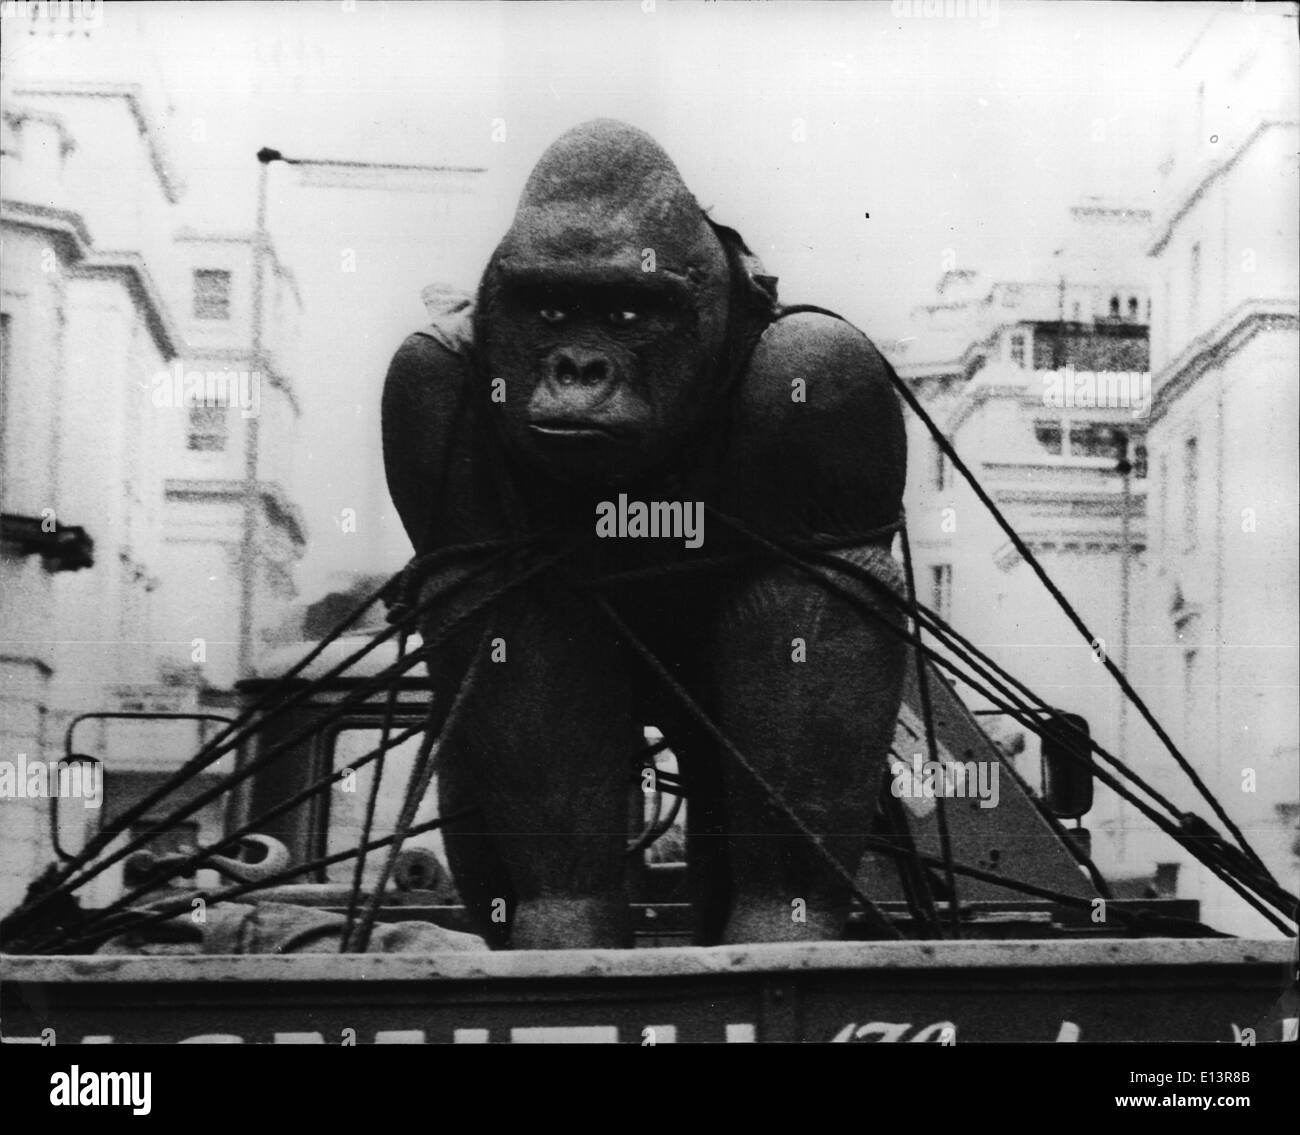 27 mars 2012 - Le plus grand du monde : de nombreux londoniens Corilla en céramique ont été étonnés de voir ce qui semblait être un prix de la vie - comme gorille attachés par des cordes à l'arrière d'un camion. Une inspection a montré que le gorille était en fait un géant fait de céramique par le sculpteur Peter Edwards, diplômé du Royal College of Art spécialement conçu pour John Aspinall zoologiste célèbre, le gorille est que l'on croit être le grand modèle en céramique sur une seule pièce faite à l'extérieur de la Chine. Il pèse environ 600 livres. Les travaux devraient être en existence longtemps après la disparition de gorille est éteinte. Banque D'Images